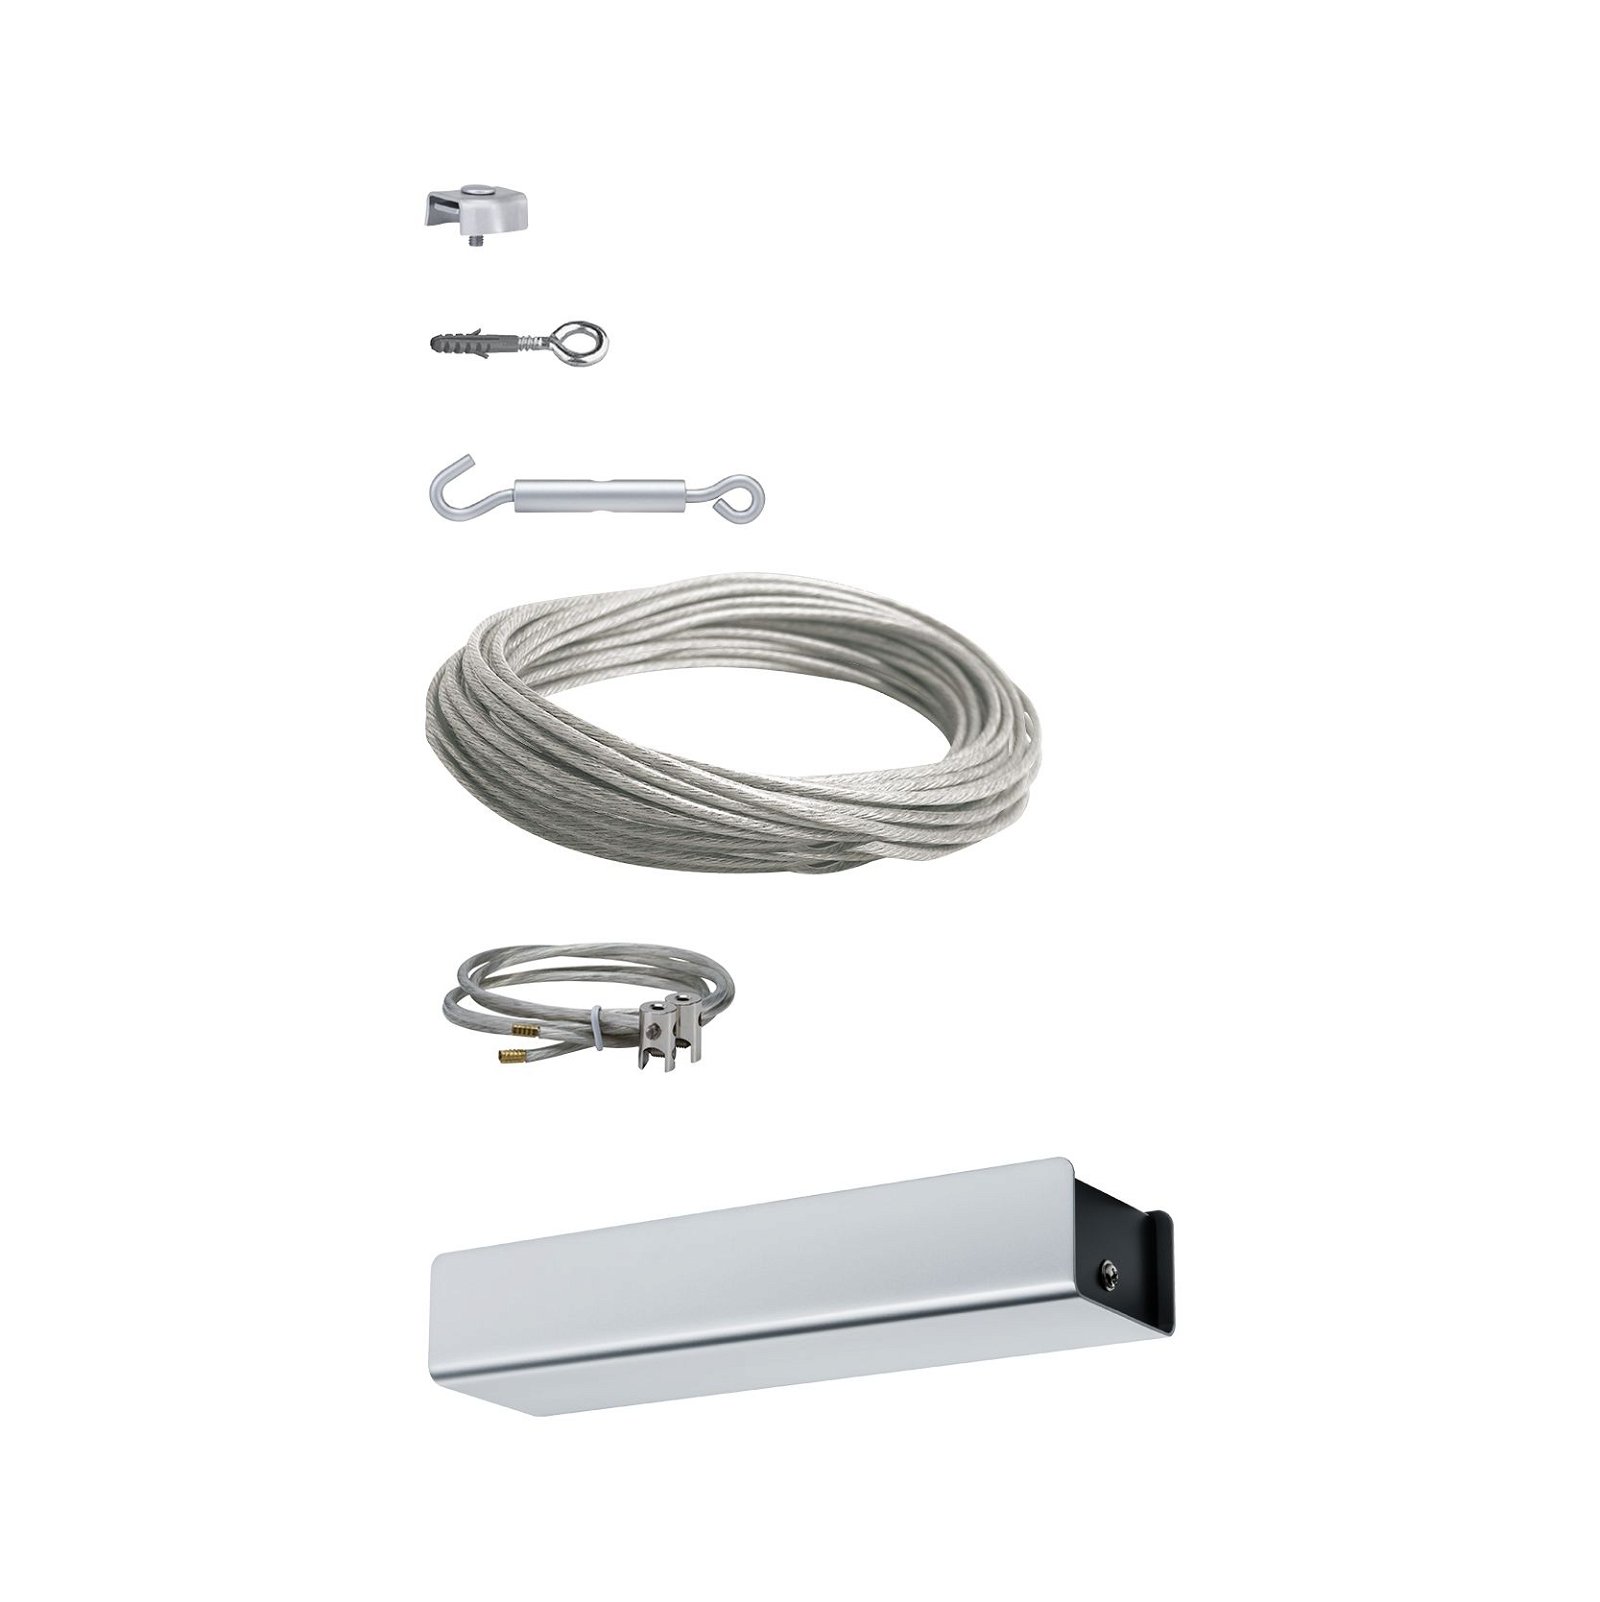 LED-kabelsysteem Basisset incl. kabel, transformator, spantoebehoren zonder armaturen 230/12V Chroom mat